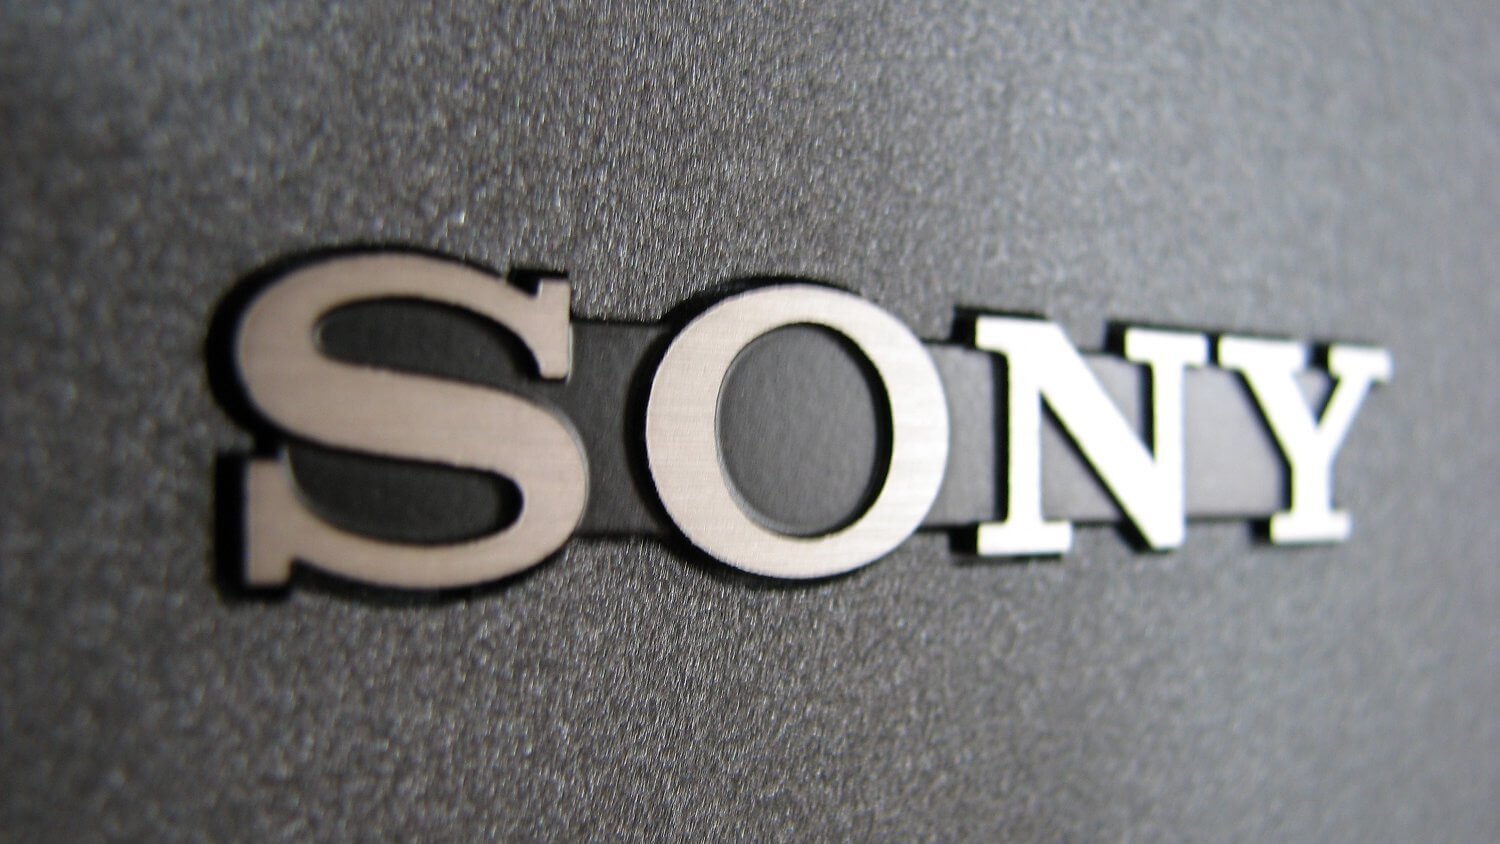 Sony якобы готовит телефон с 16-мегапиксельной селфи-камерой. Фото.